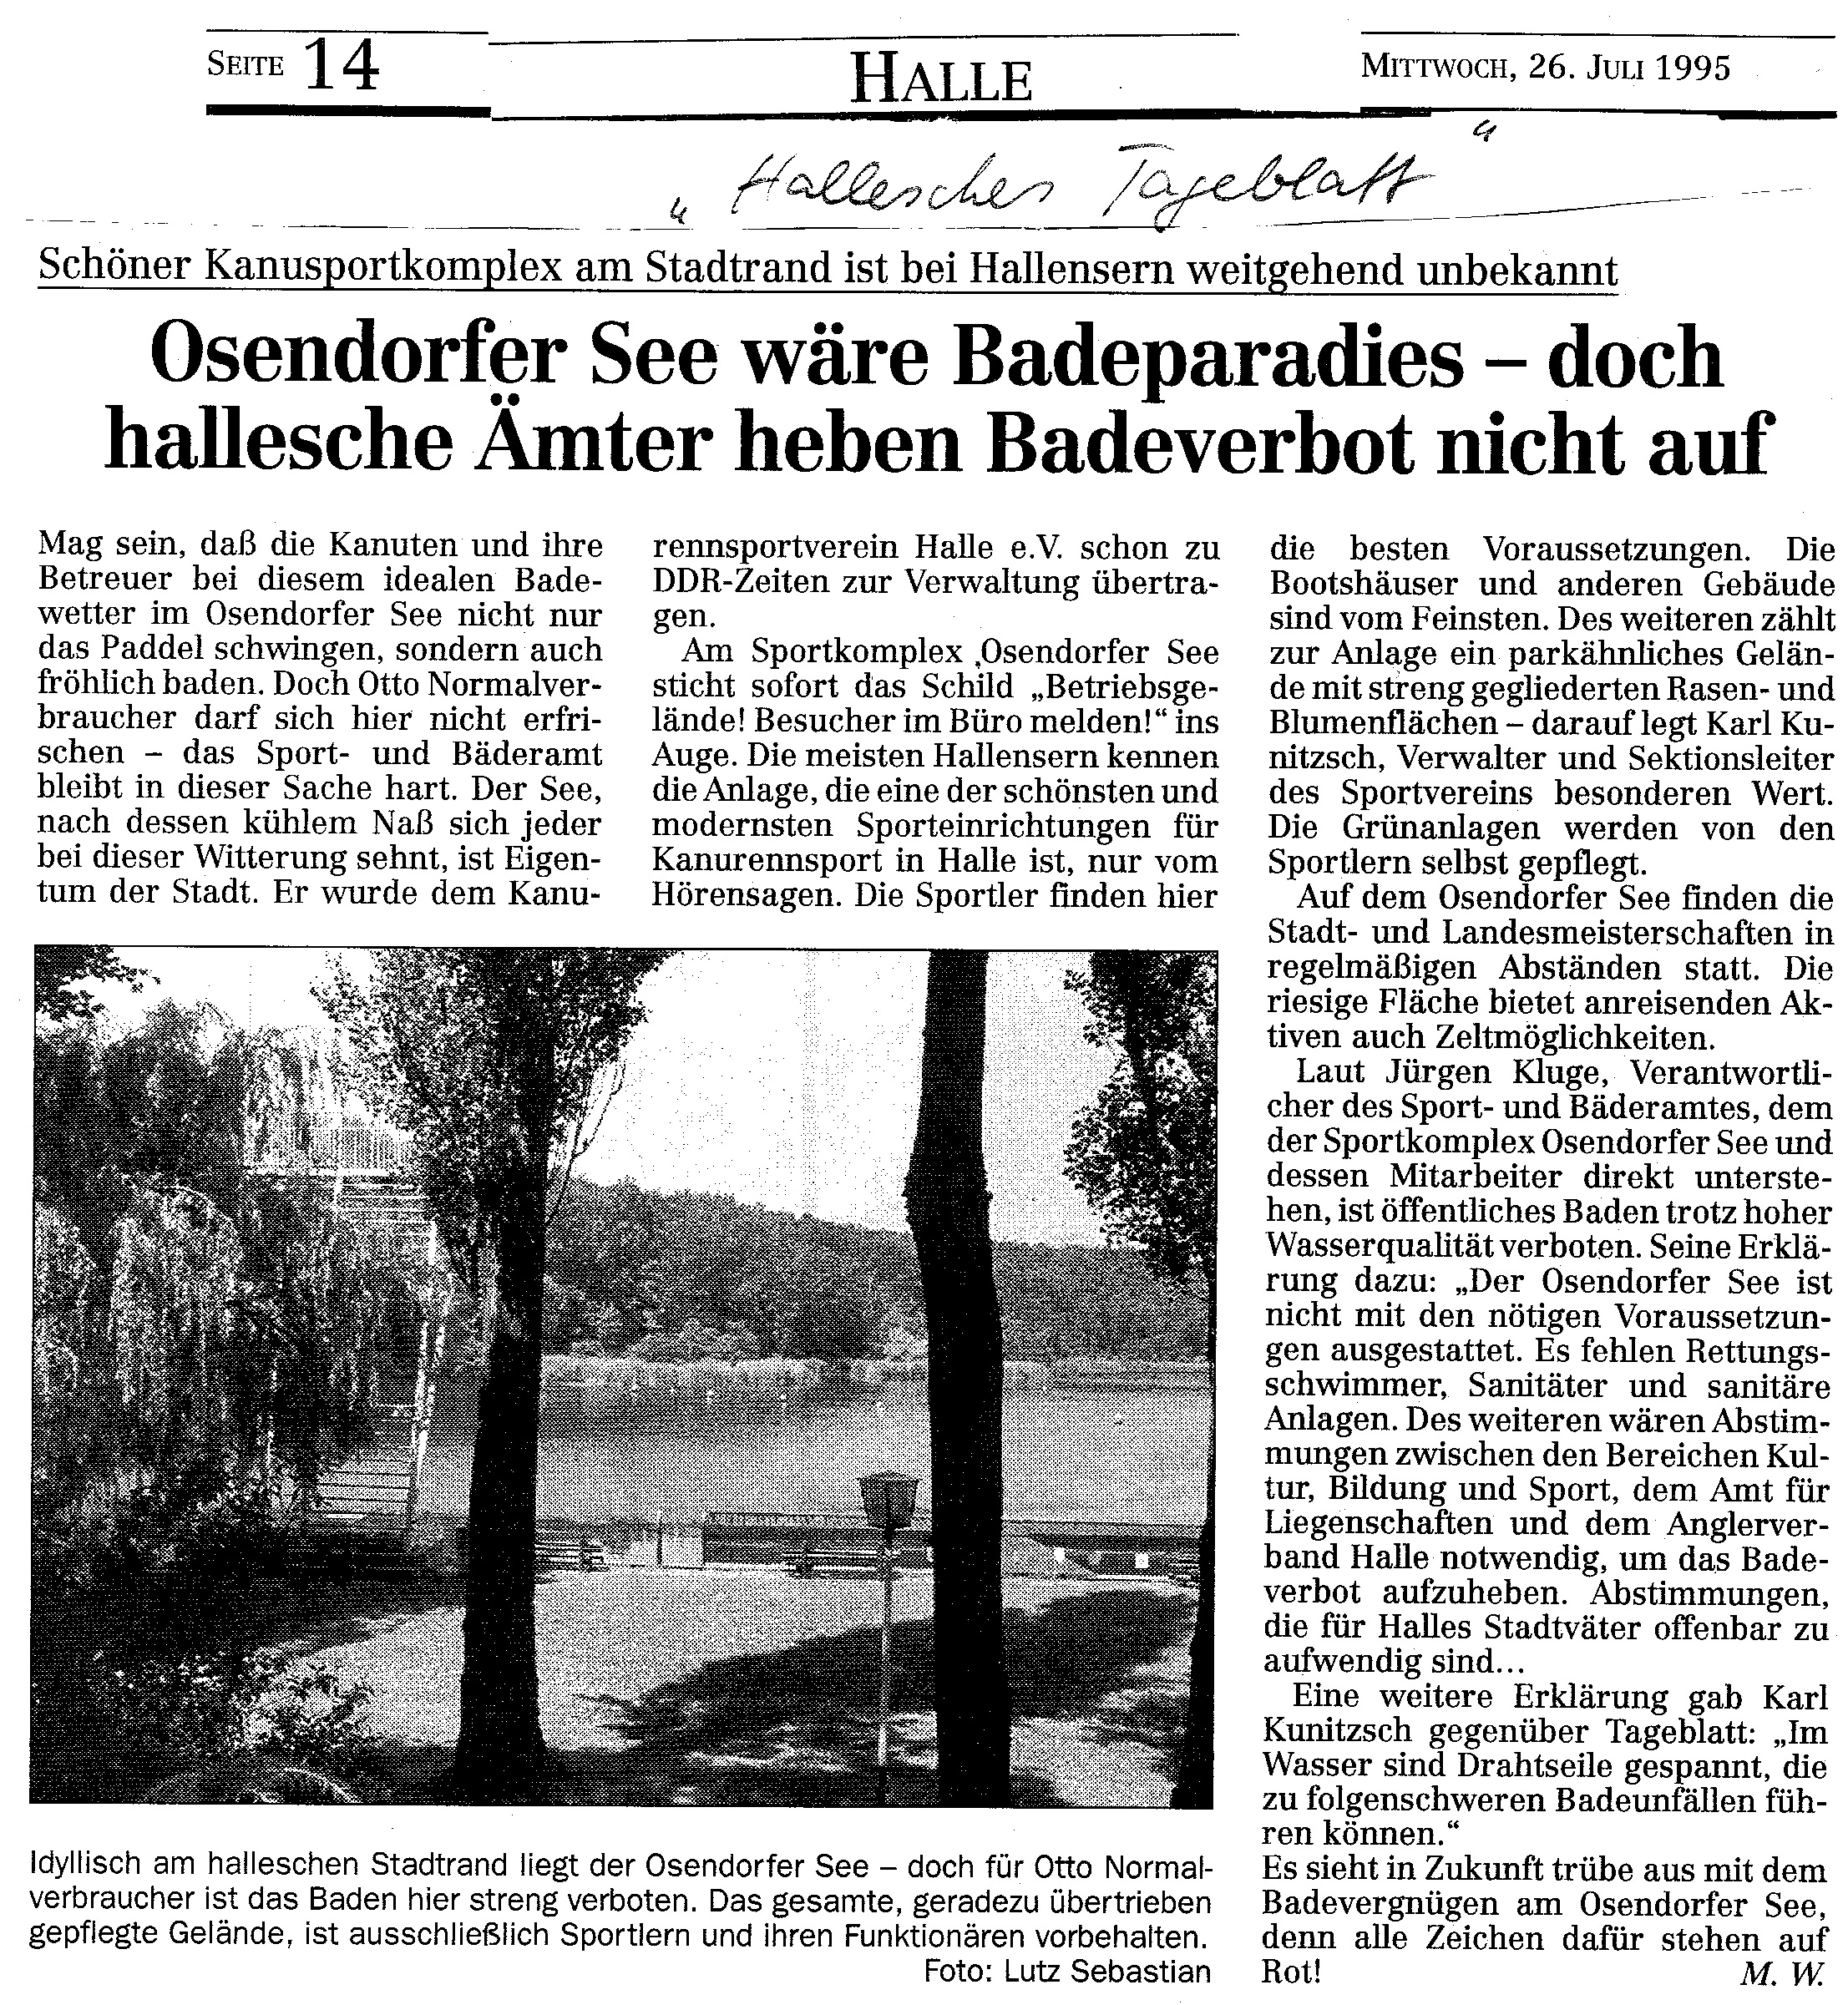 1995-07-26 Hallesches Tageblatt Osendorfer See wäre Badeparadies- doch hallesche Ämter heben Badeverbot nicht auf